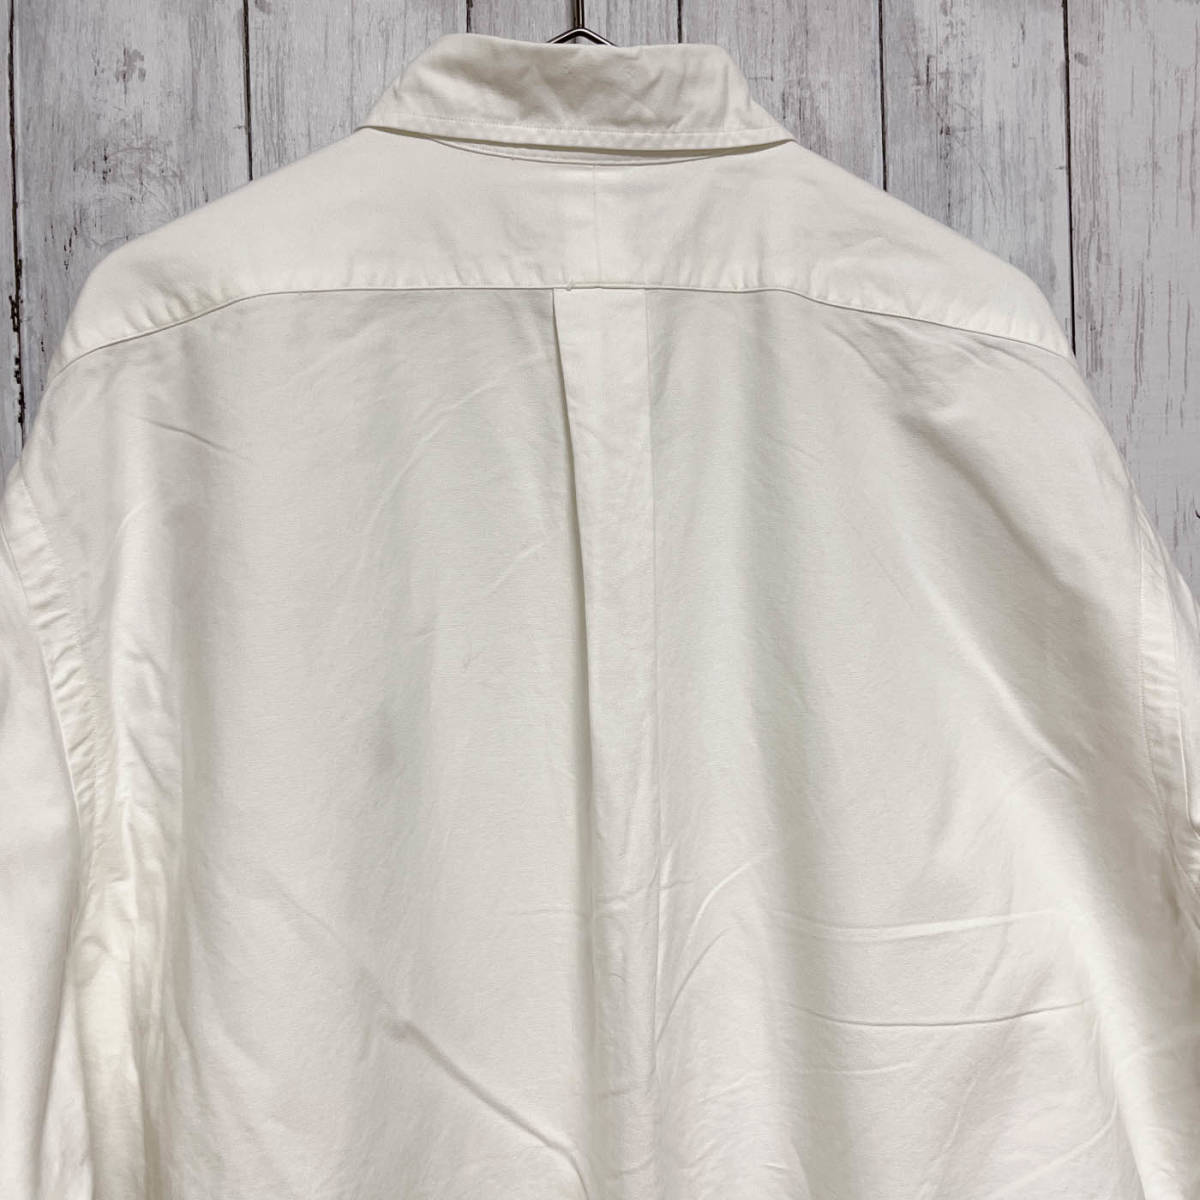 ラルフローレン Ralph Lauren 長袖シャツ 白シャツ メンズ ワンポイント コットン100% サイズ16 1/2 （L～XLサイズ相当） 3‐695